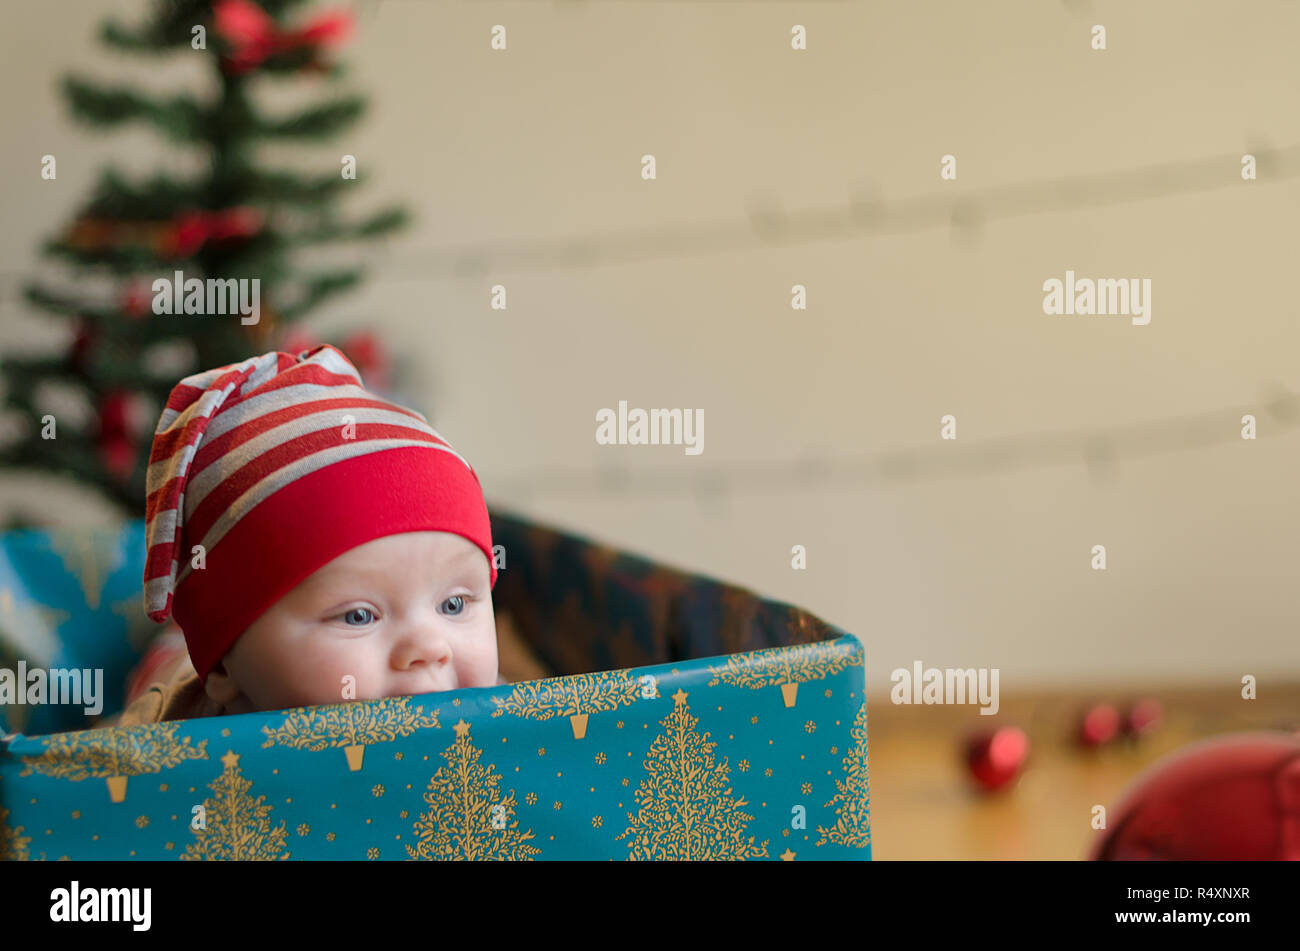 Happy Christmas baby boy in einem derzeitigen Kasten um Weihnachtsbaum und Dekorationen Stockfoto